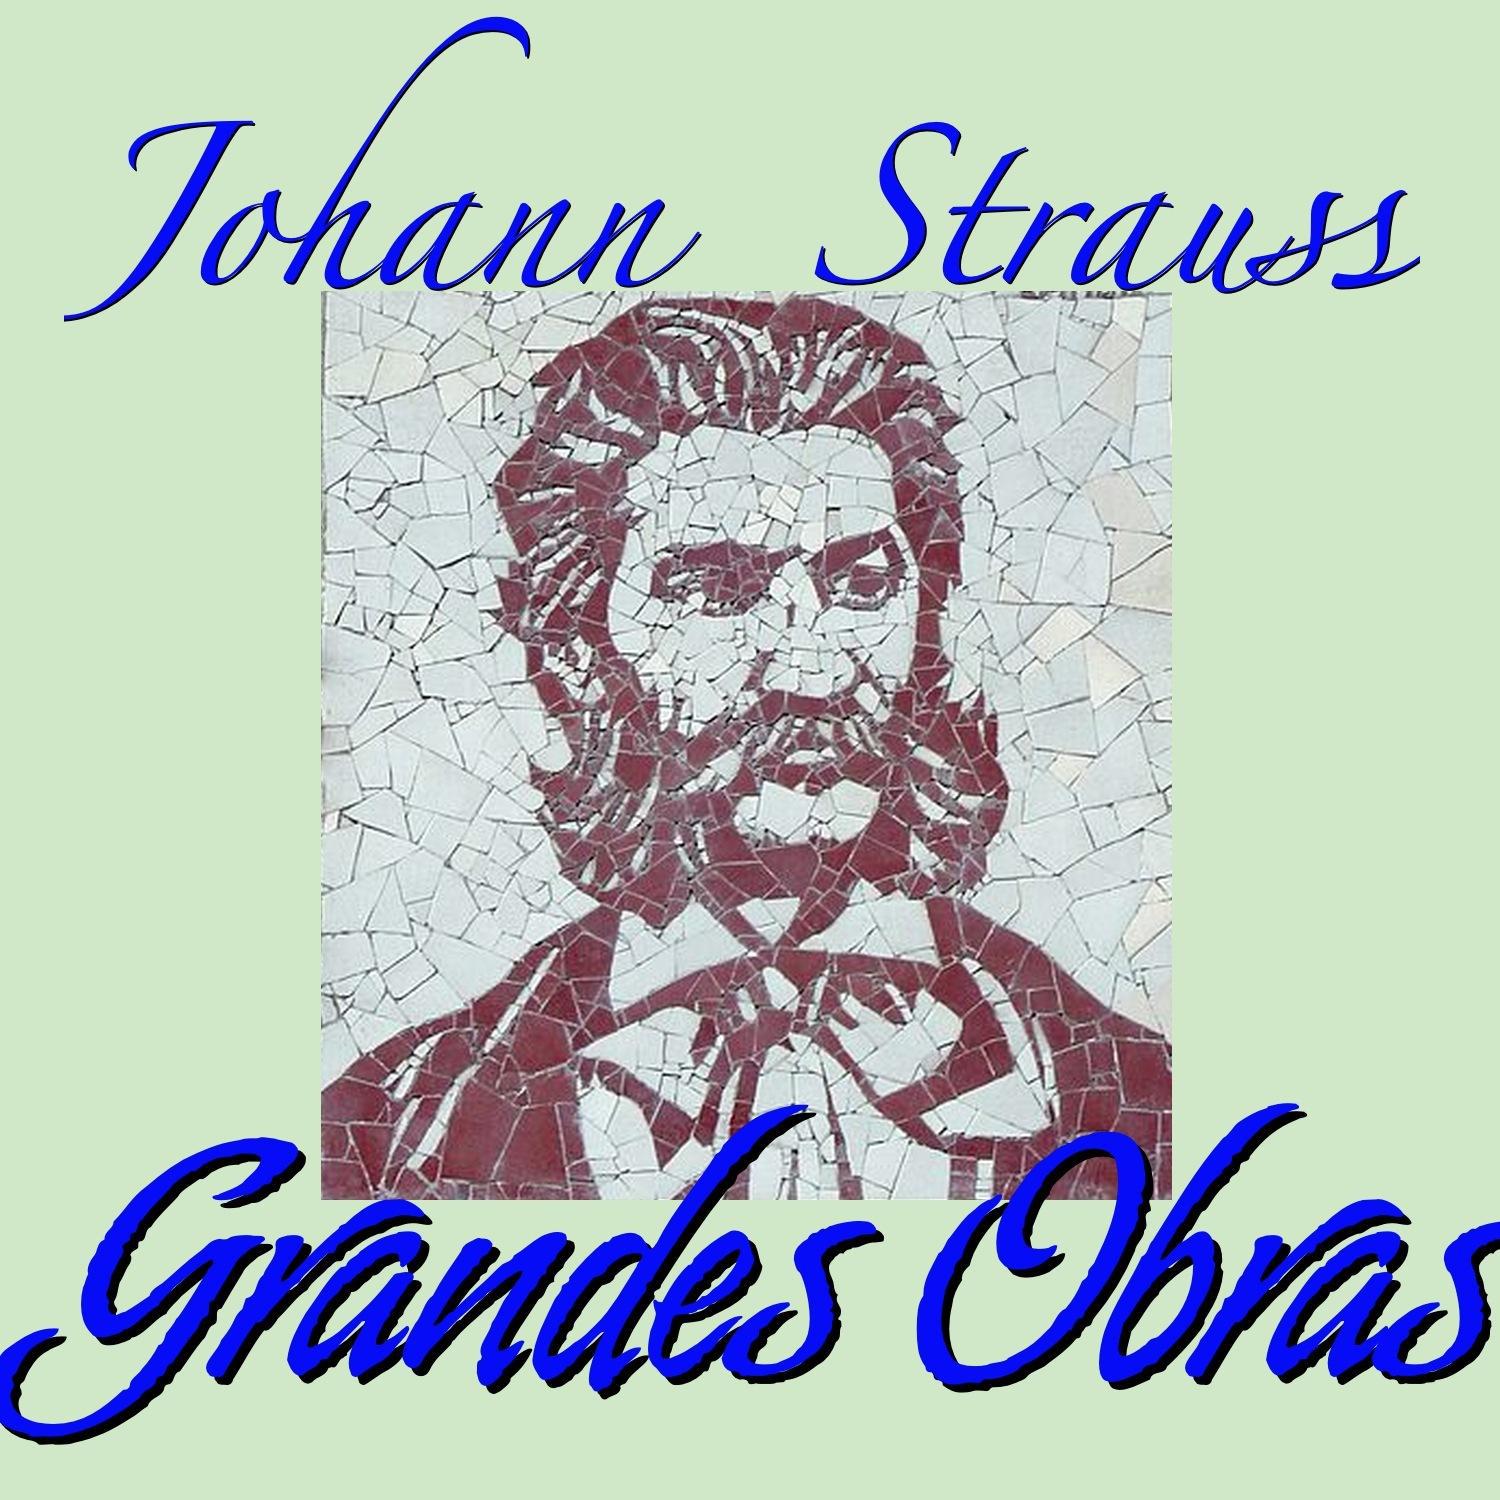 Johann Strauss Grandes Obras